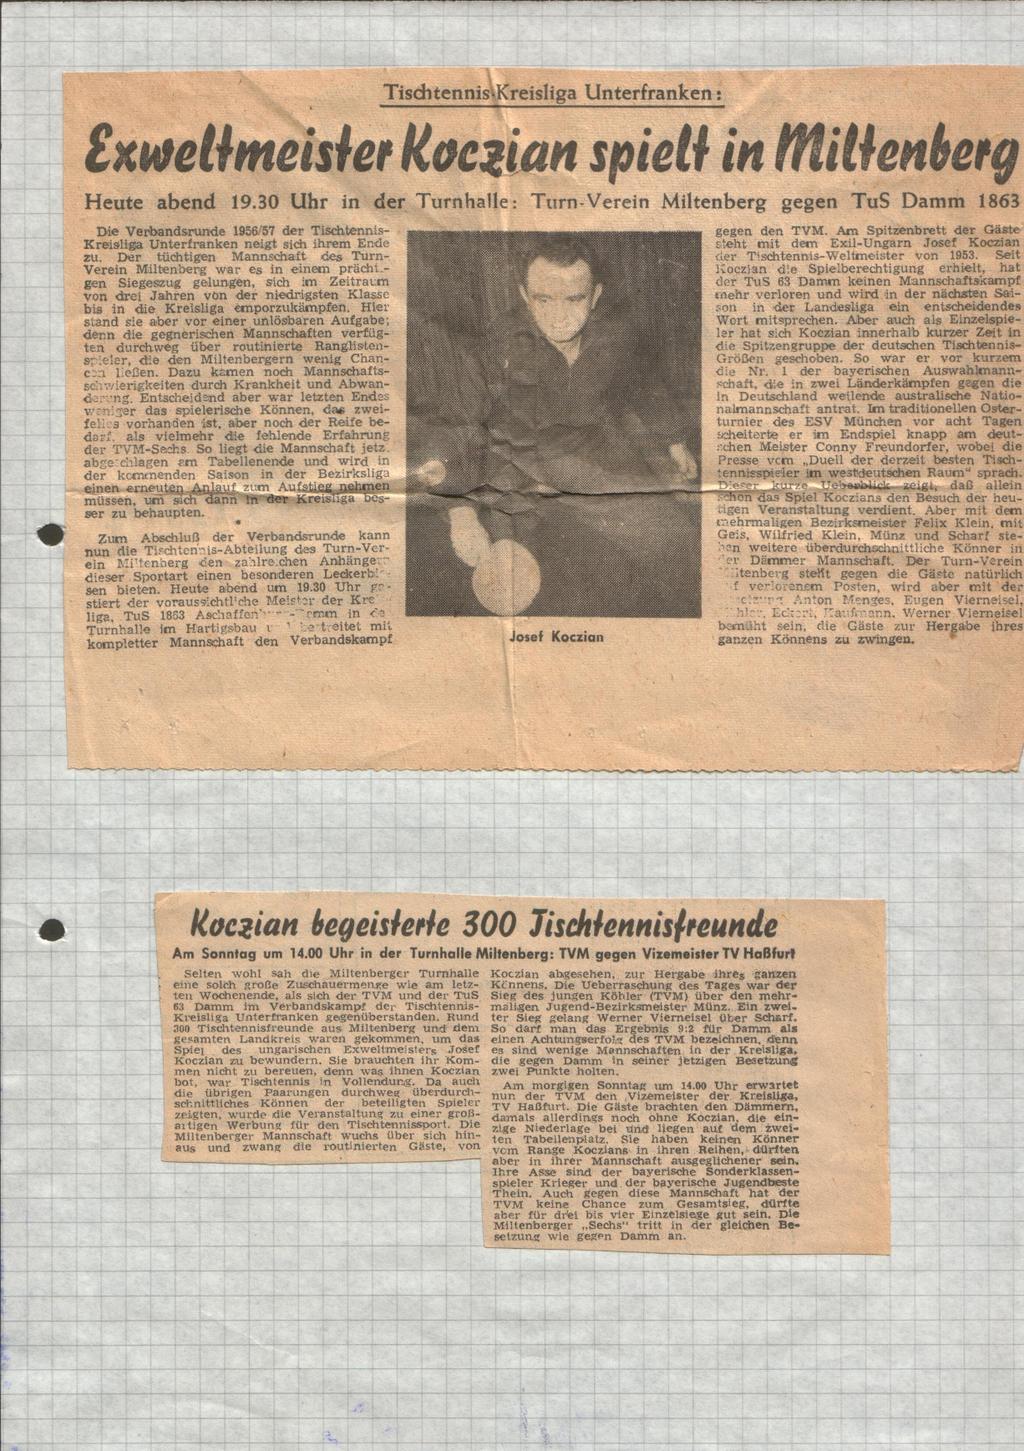 Im letzen Rundenspiel dieser Saison war der Meister TuS Damm 1963 mit dem ungarischen ExWeltmeister Josef Koczian zu Gast im Miltenberger Hartigsbau. 300 Zuschauer verfolgten dieses Spiel.